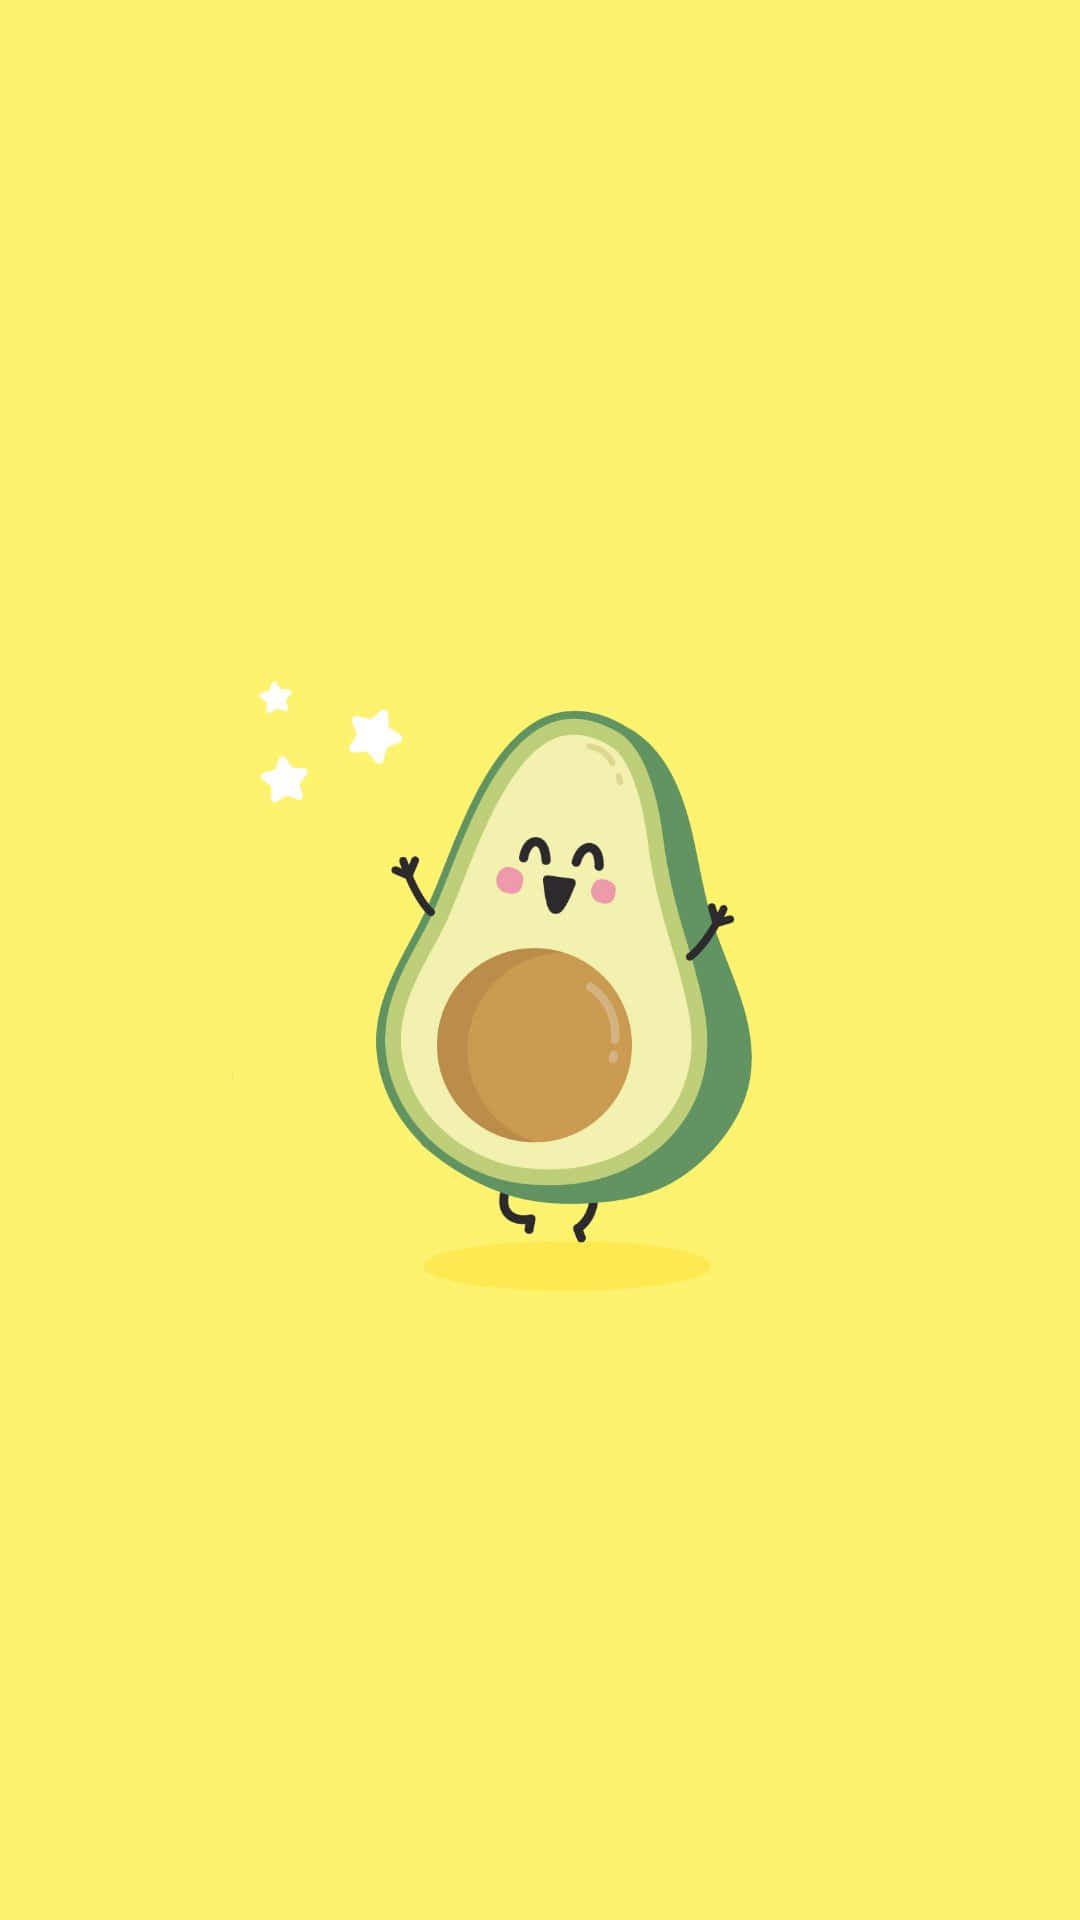 Enjoying a healthy and delicious avocado